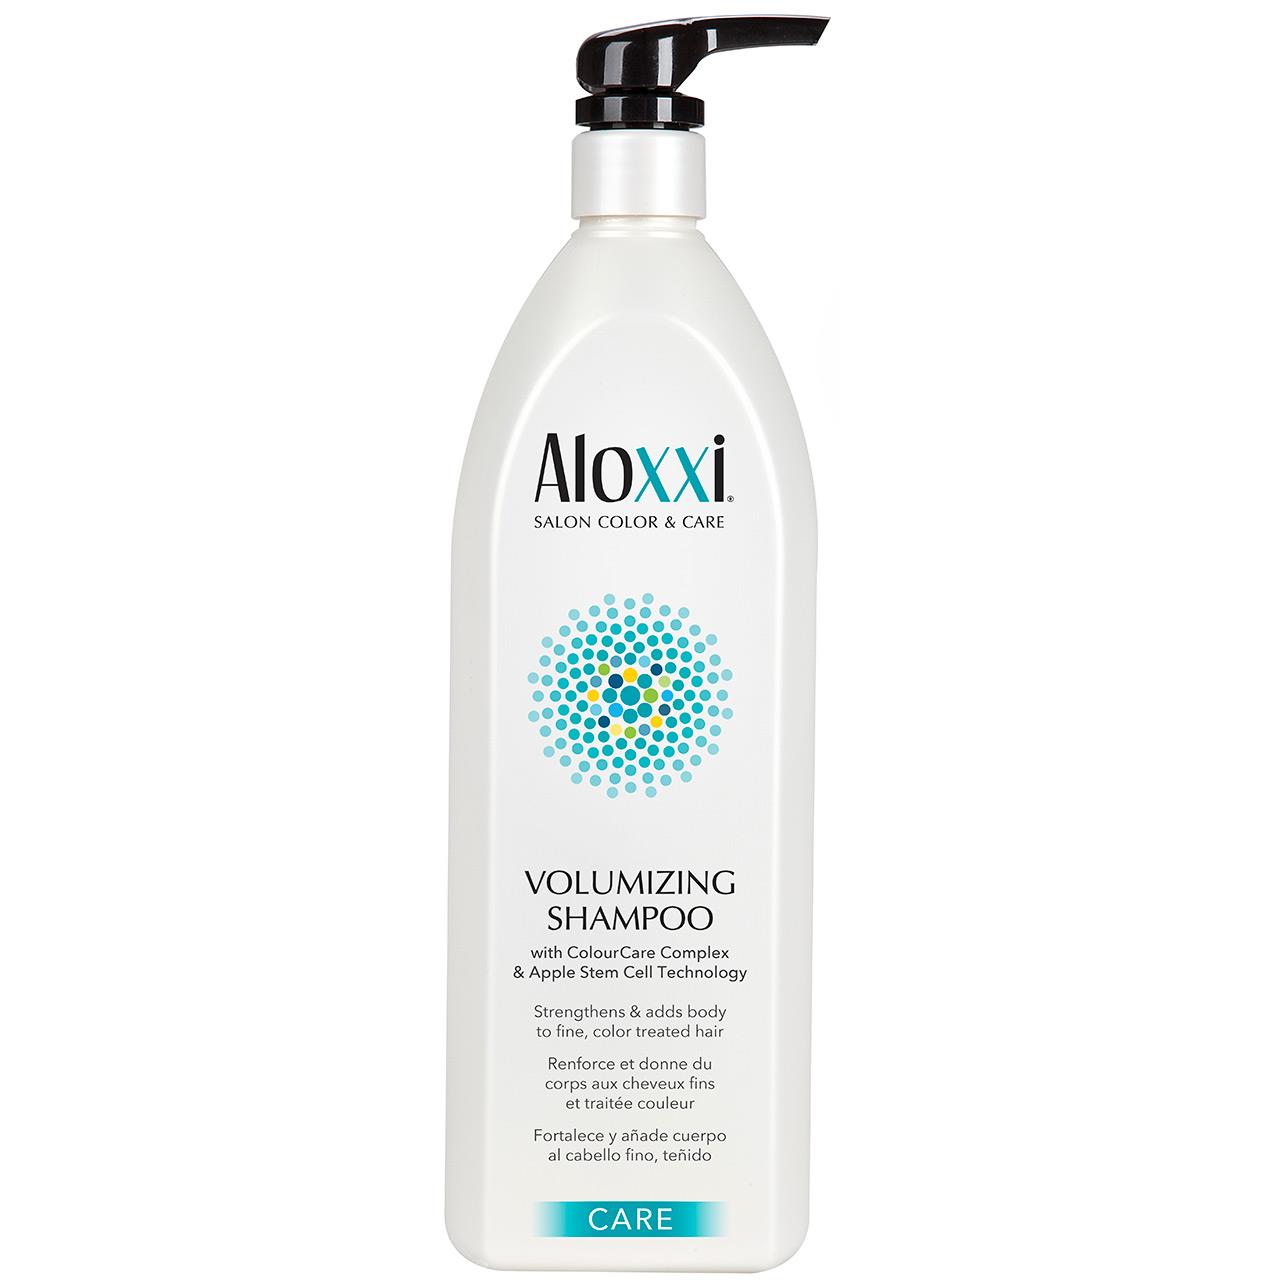 Aloxxi Volumizing and Strengthening Shampoo Liter